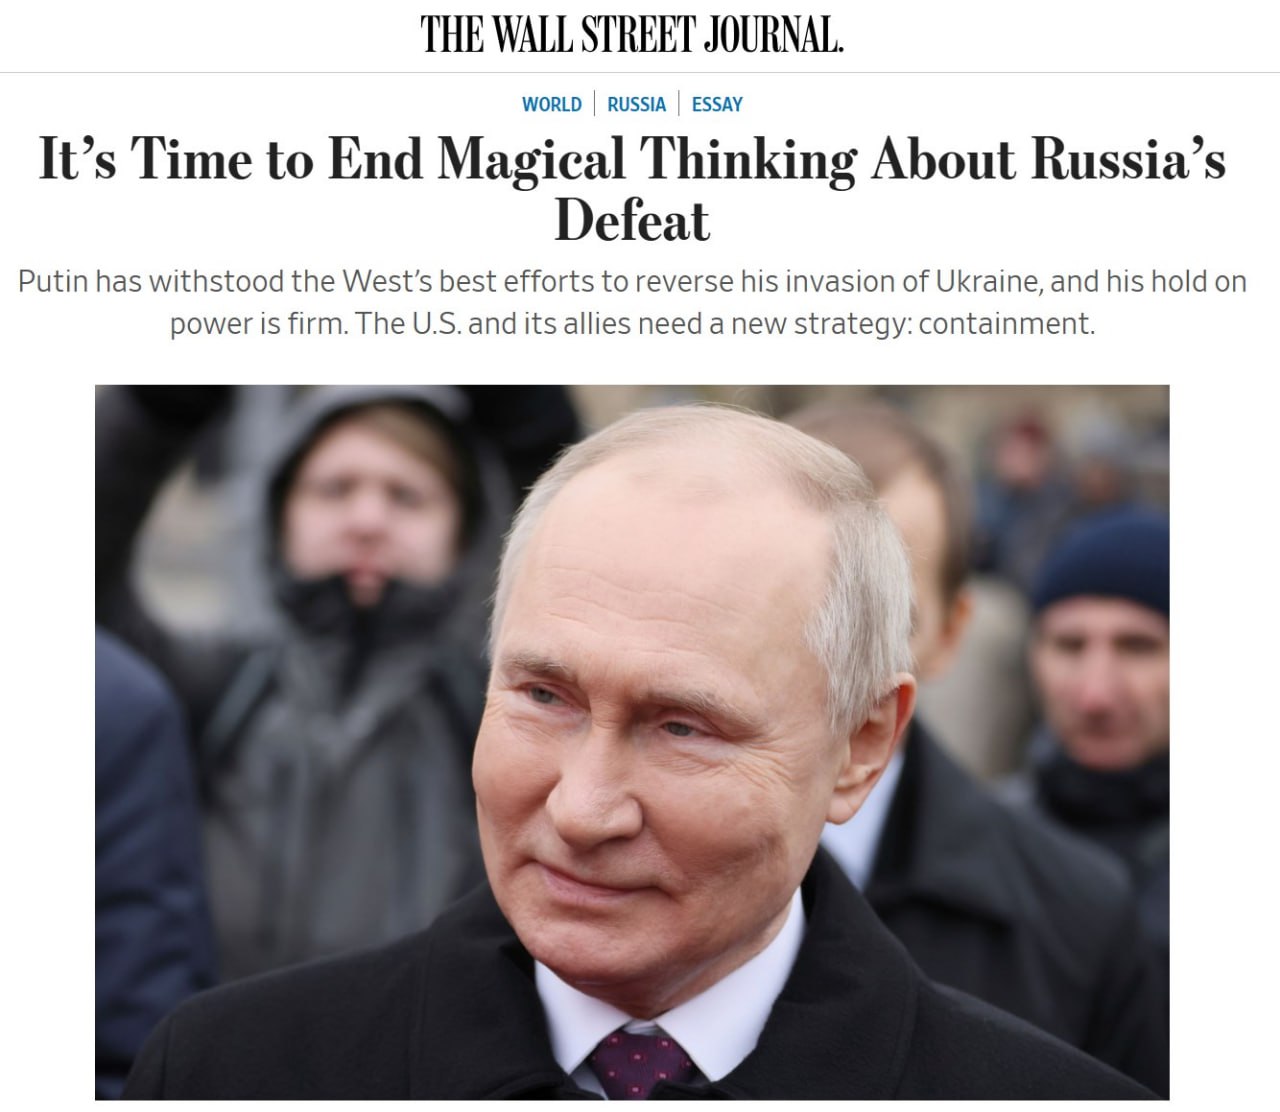 Пришло время прекратить магические размышления о поражении России, пишет Wall Street Jornal